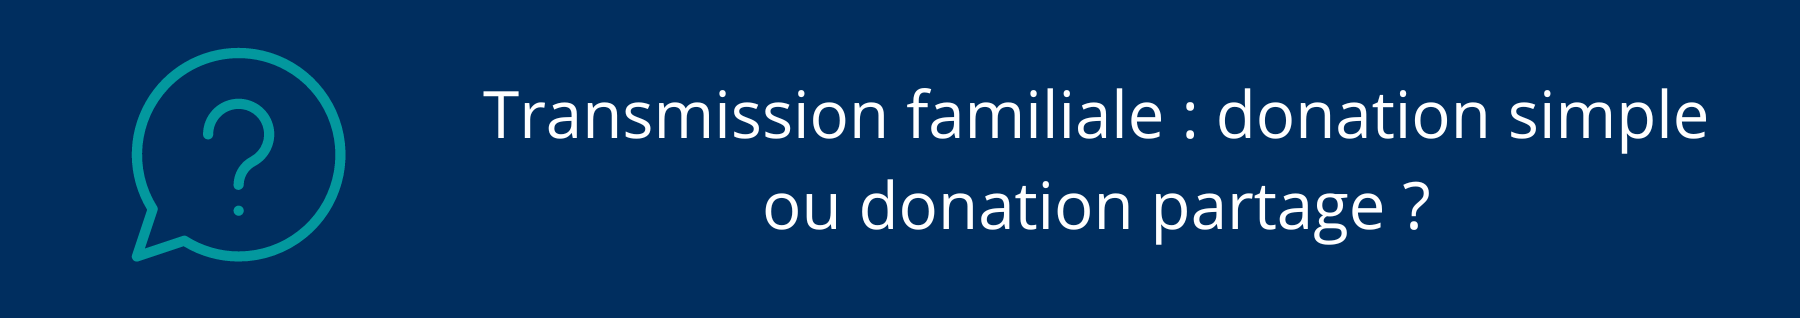 Transmission familiale : donation simple ou donation partage ?